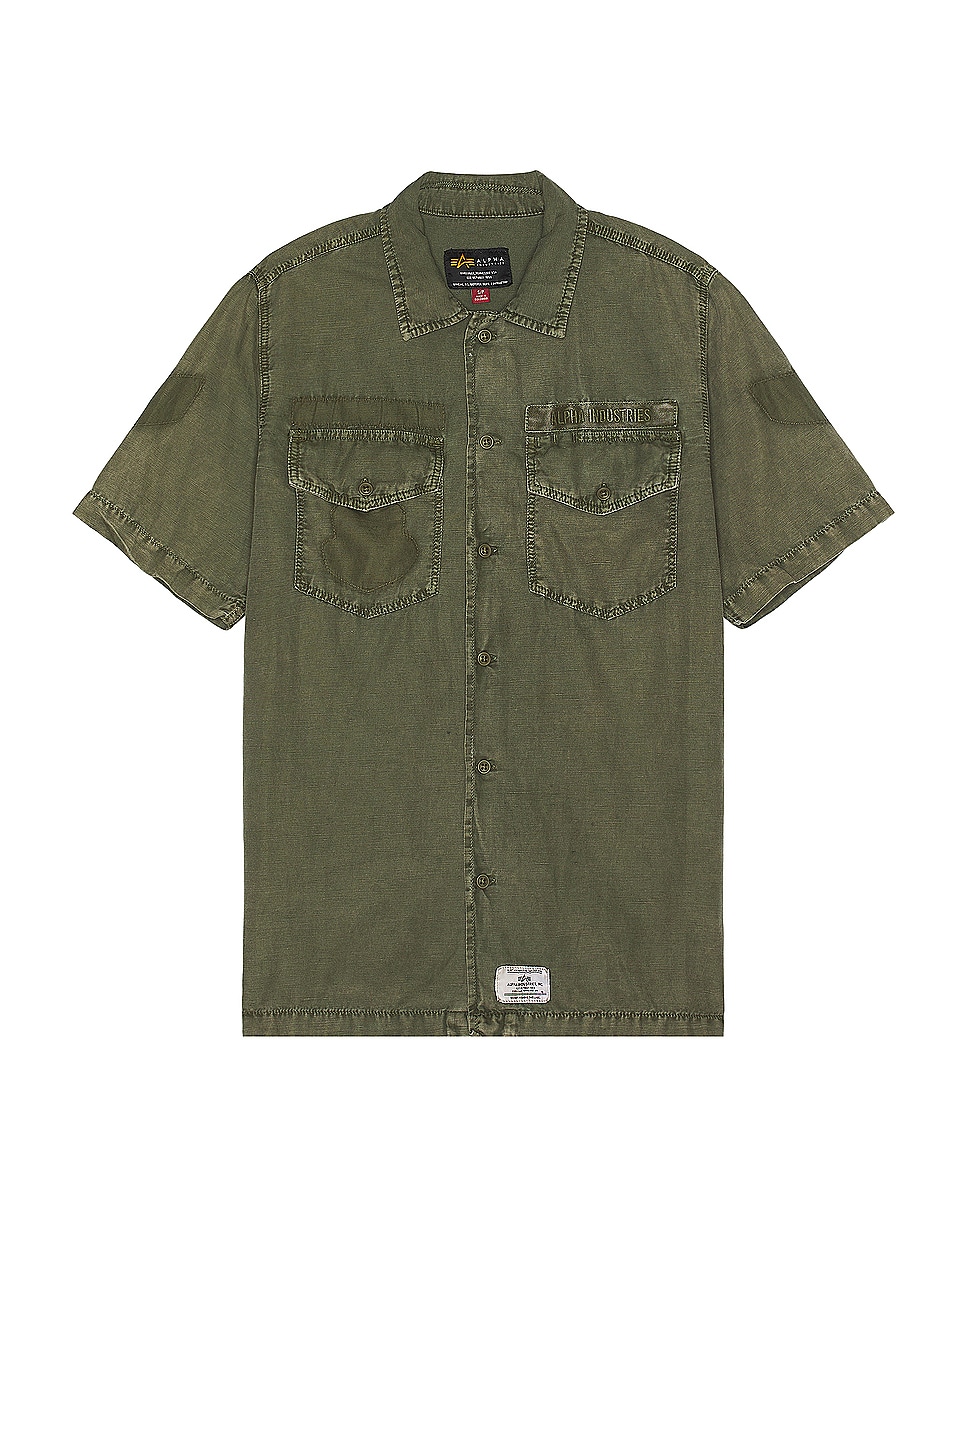 Image 1 of ALPHA INDUSTRIES Short Sleeve Washed Fatigue Shirt Jacket in Og-107 Green